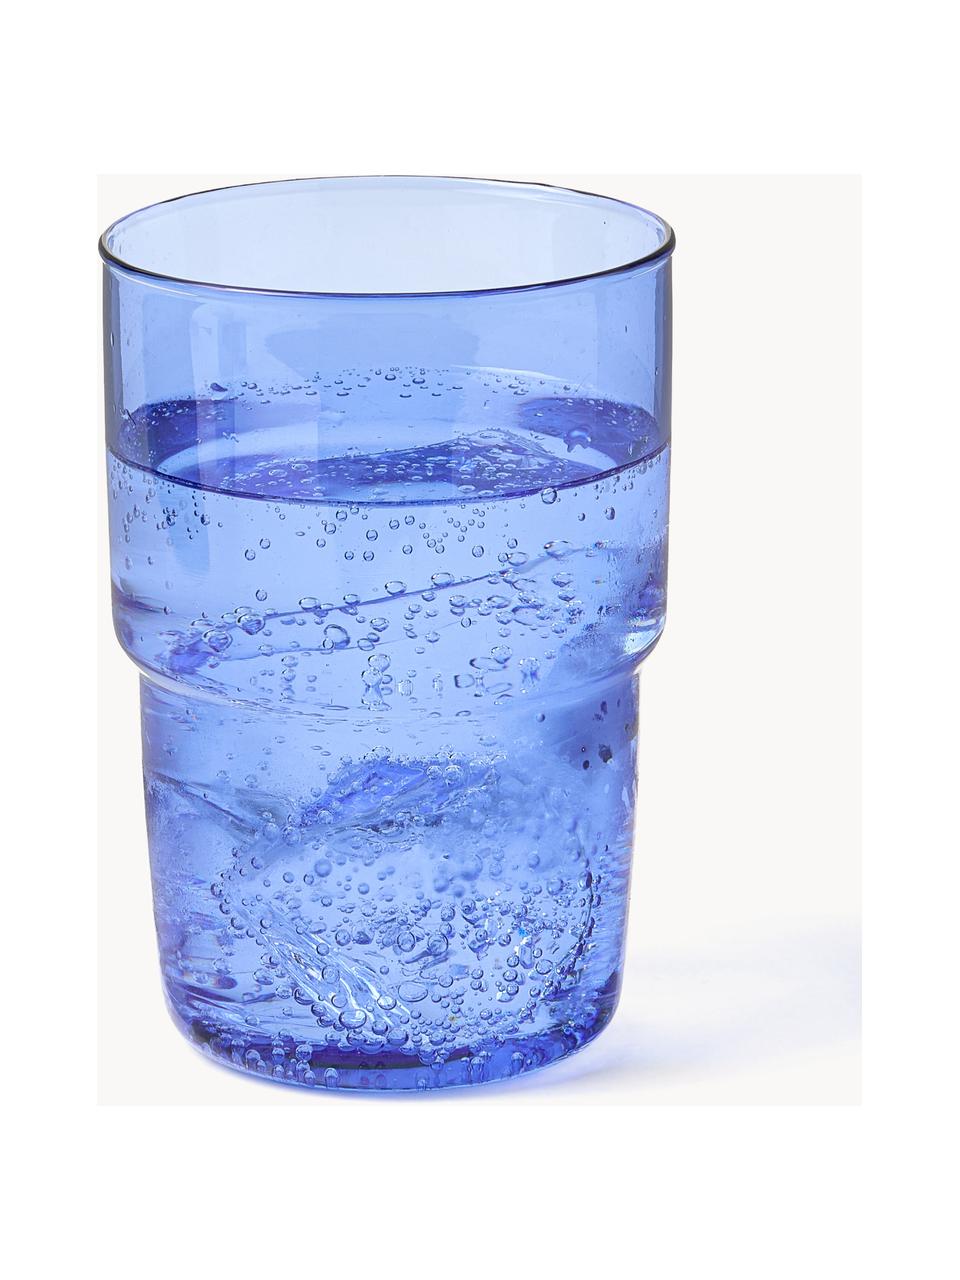 Poháre na vodu z borosilikátového skla Torino, 2 ks, Borosilikátové sklo

Objavte všestrannosť borosilikátového skla pre váš domov! Borosilikátové sklo je kvalitný, spoľahlivý a robustný materiál. Vyznačuje sa mimoriadnou tepelnou odolnosťou a preto je ideálny pre váš horúci čaj alebo kávu. V porovnaní s klasickým sklom je borosilikátové sklo odolnejšie voči rozbitiu a prasknutiu, a preto je bezpečným spoločníkom vo vašej domácnosti., Modrá, priehľadná, Ø 8 x V 12 cm, 400 ml